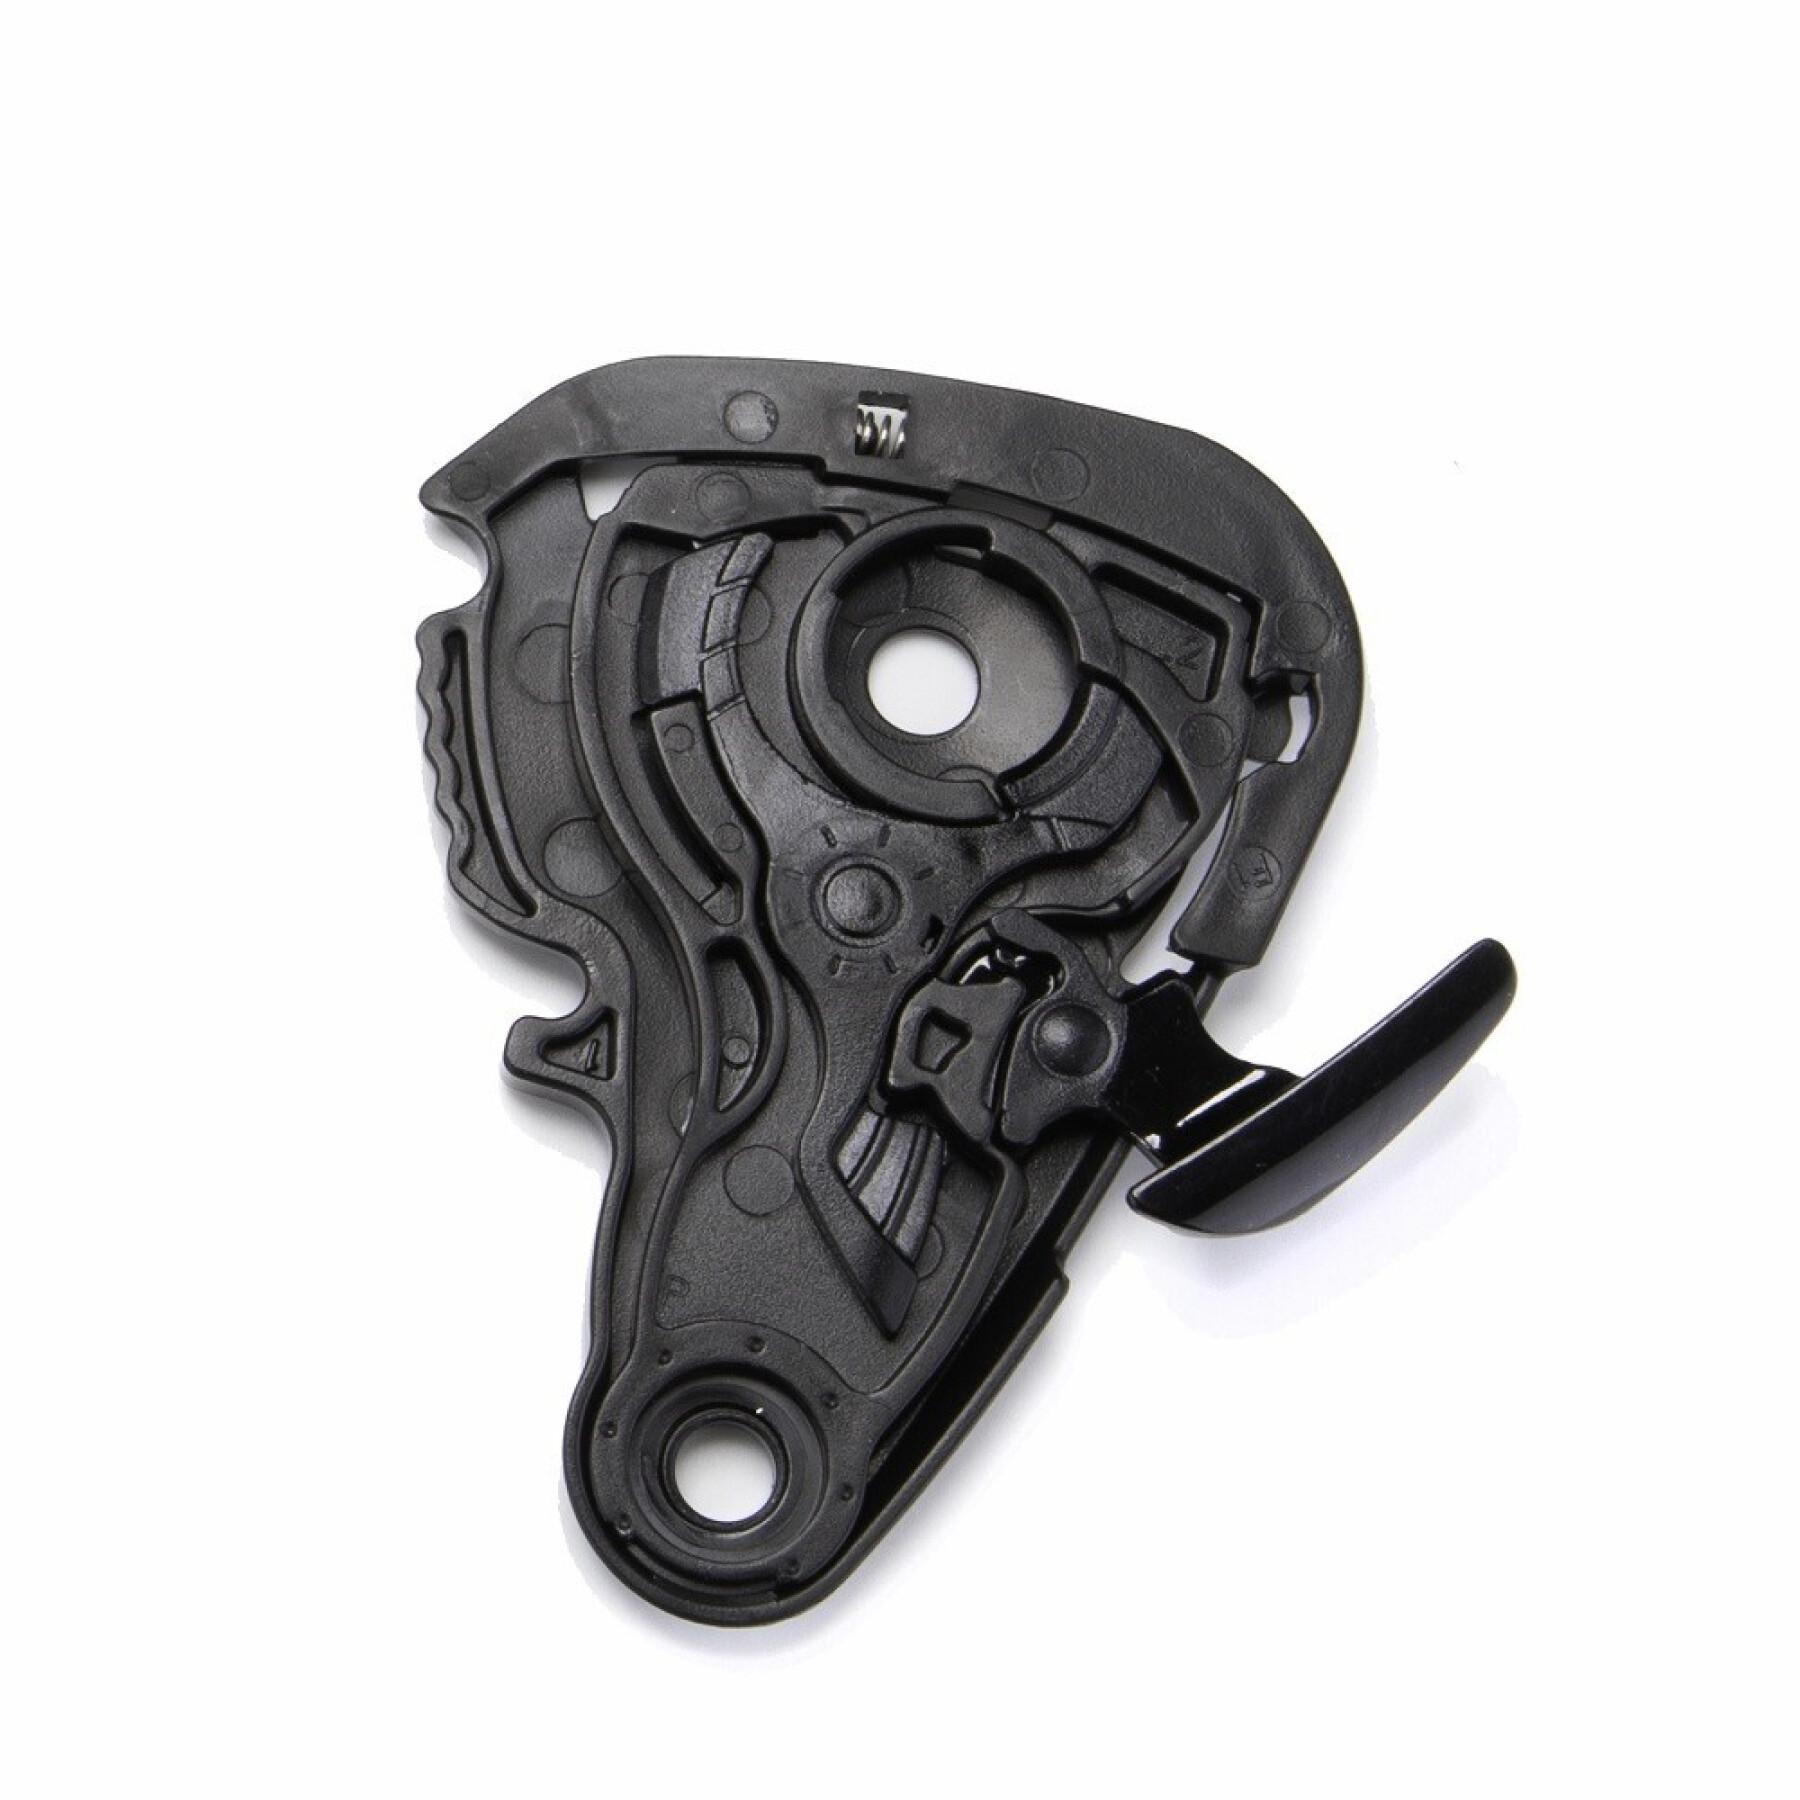 Motorcycle visor mounting kit Scorpion Exo-920 / 3000 Air Shield